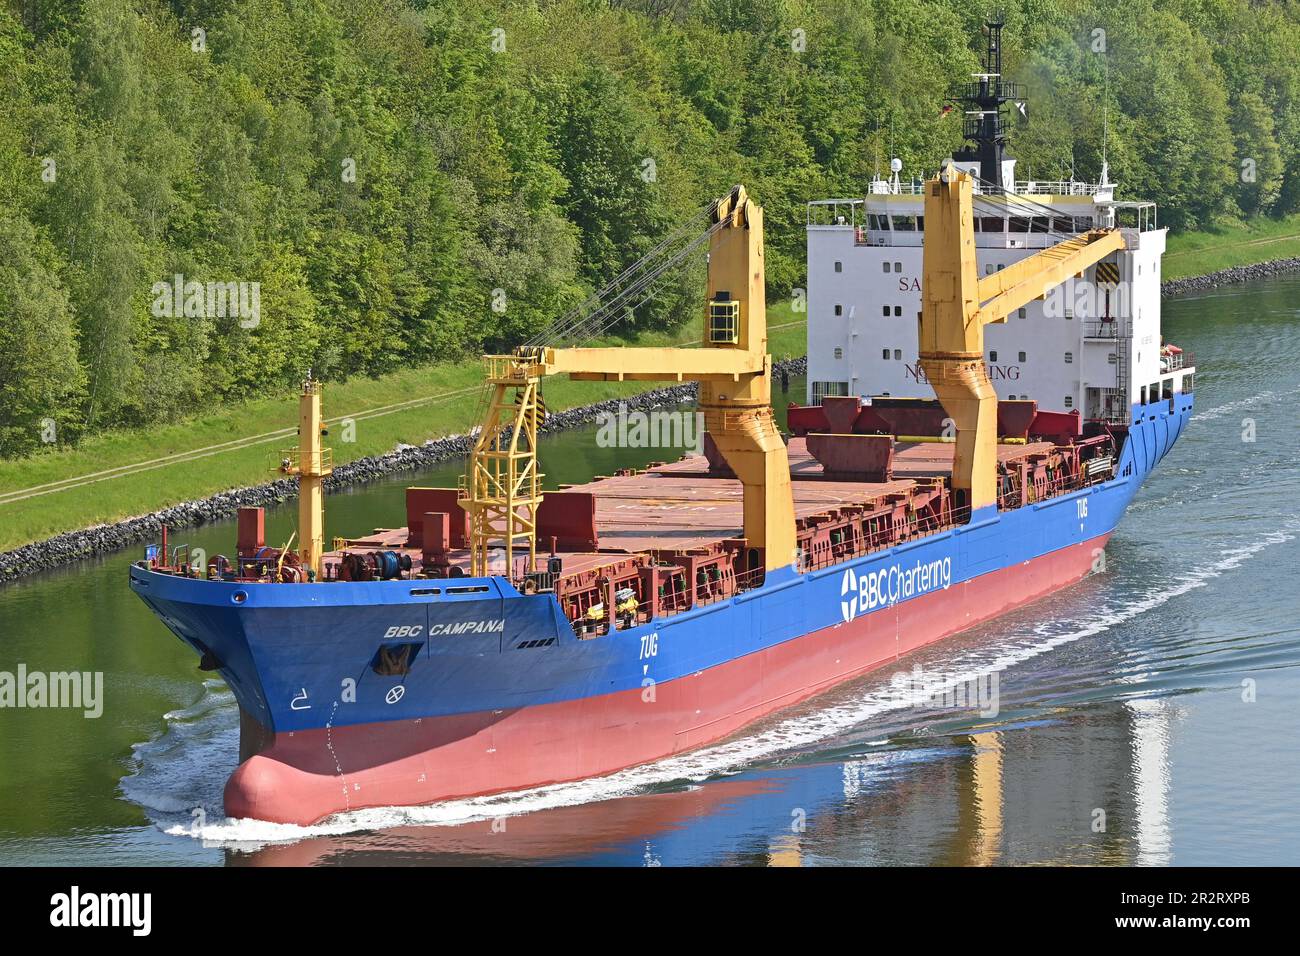 Genral Cargo Ship BBC CAMPANA Stock Photo